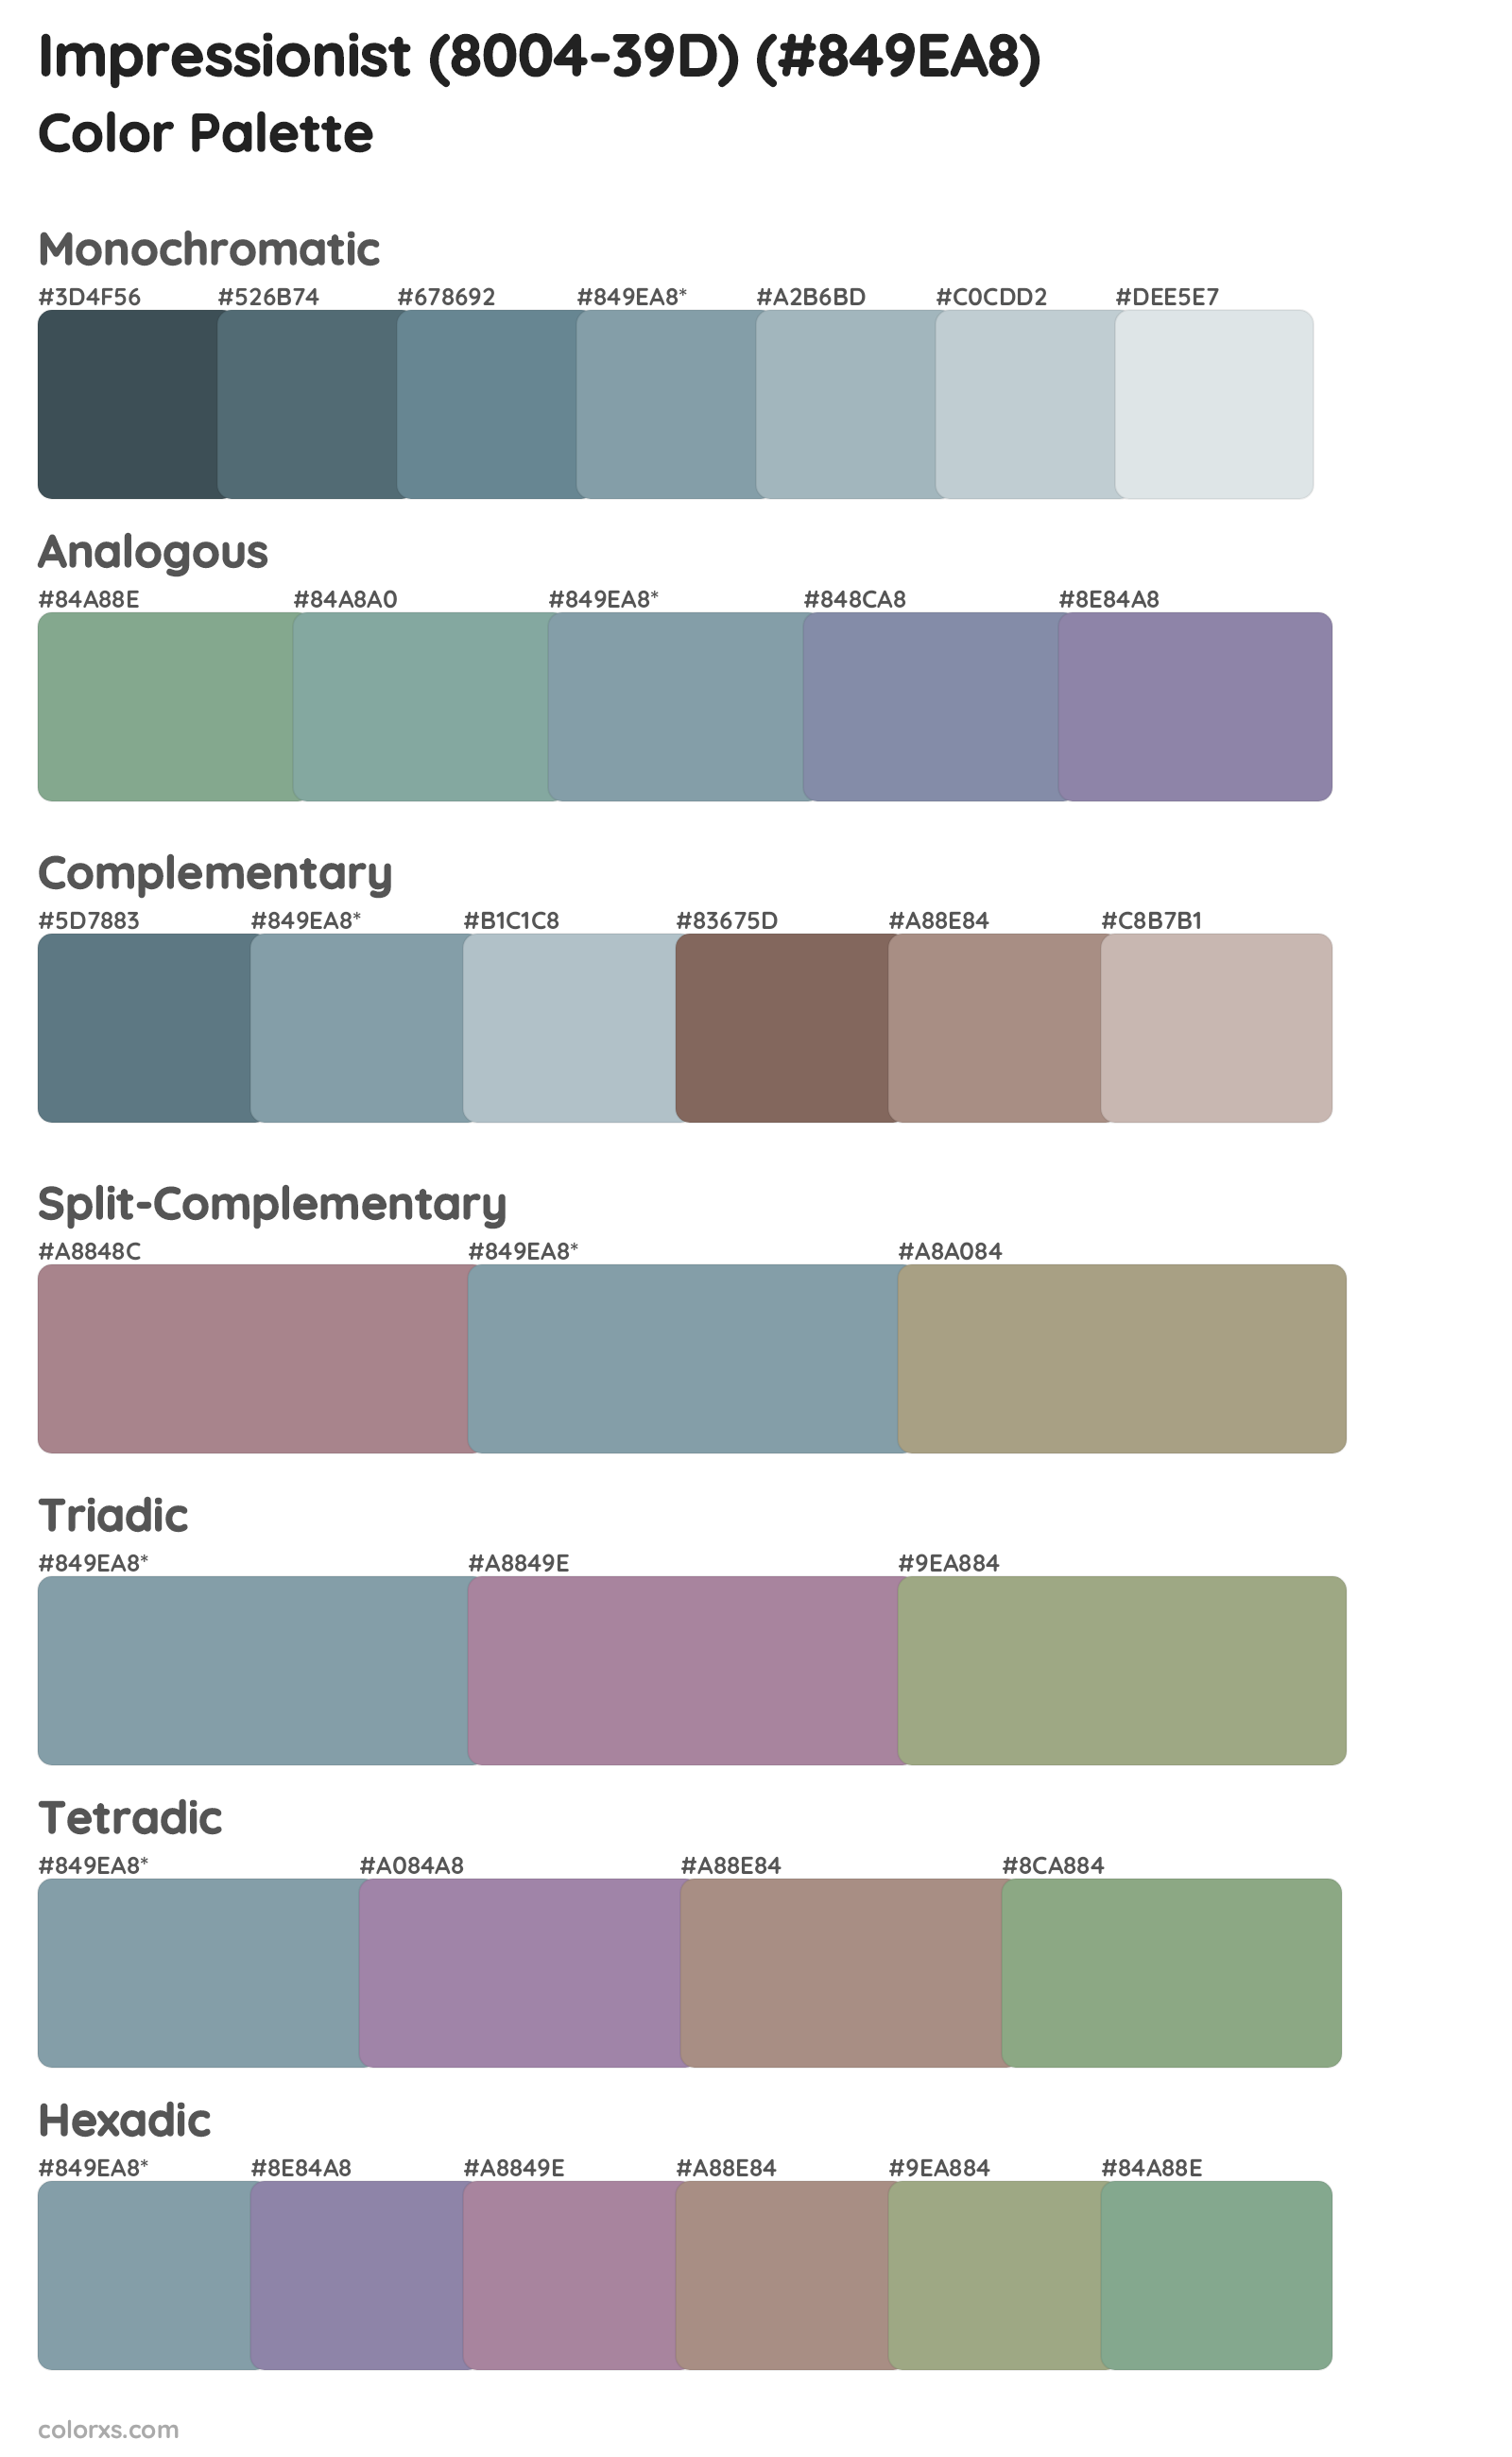 Impressionist (8004-39D) Color Scheme Palettes